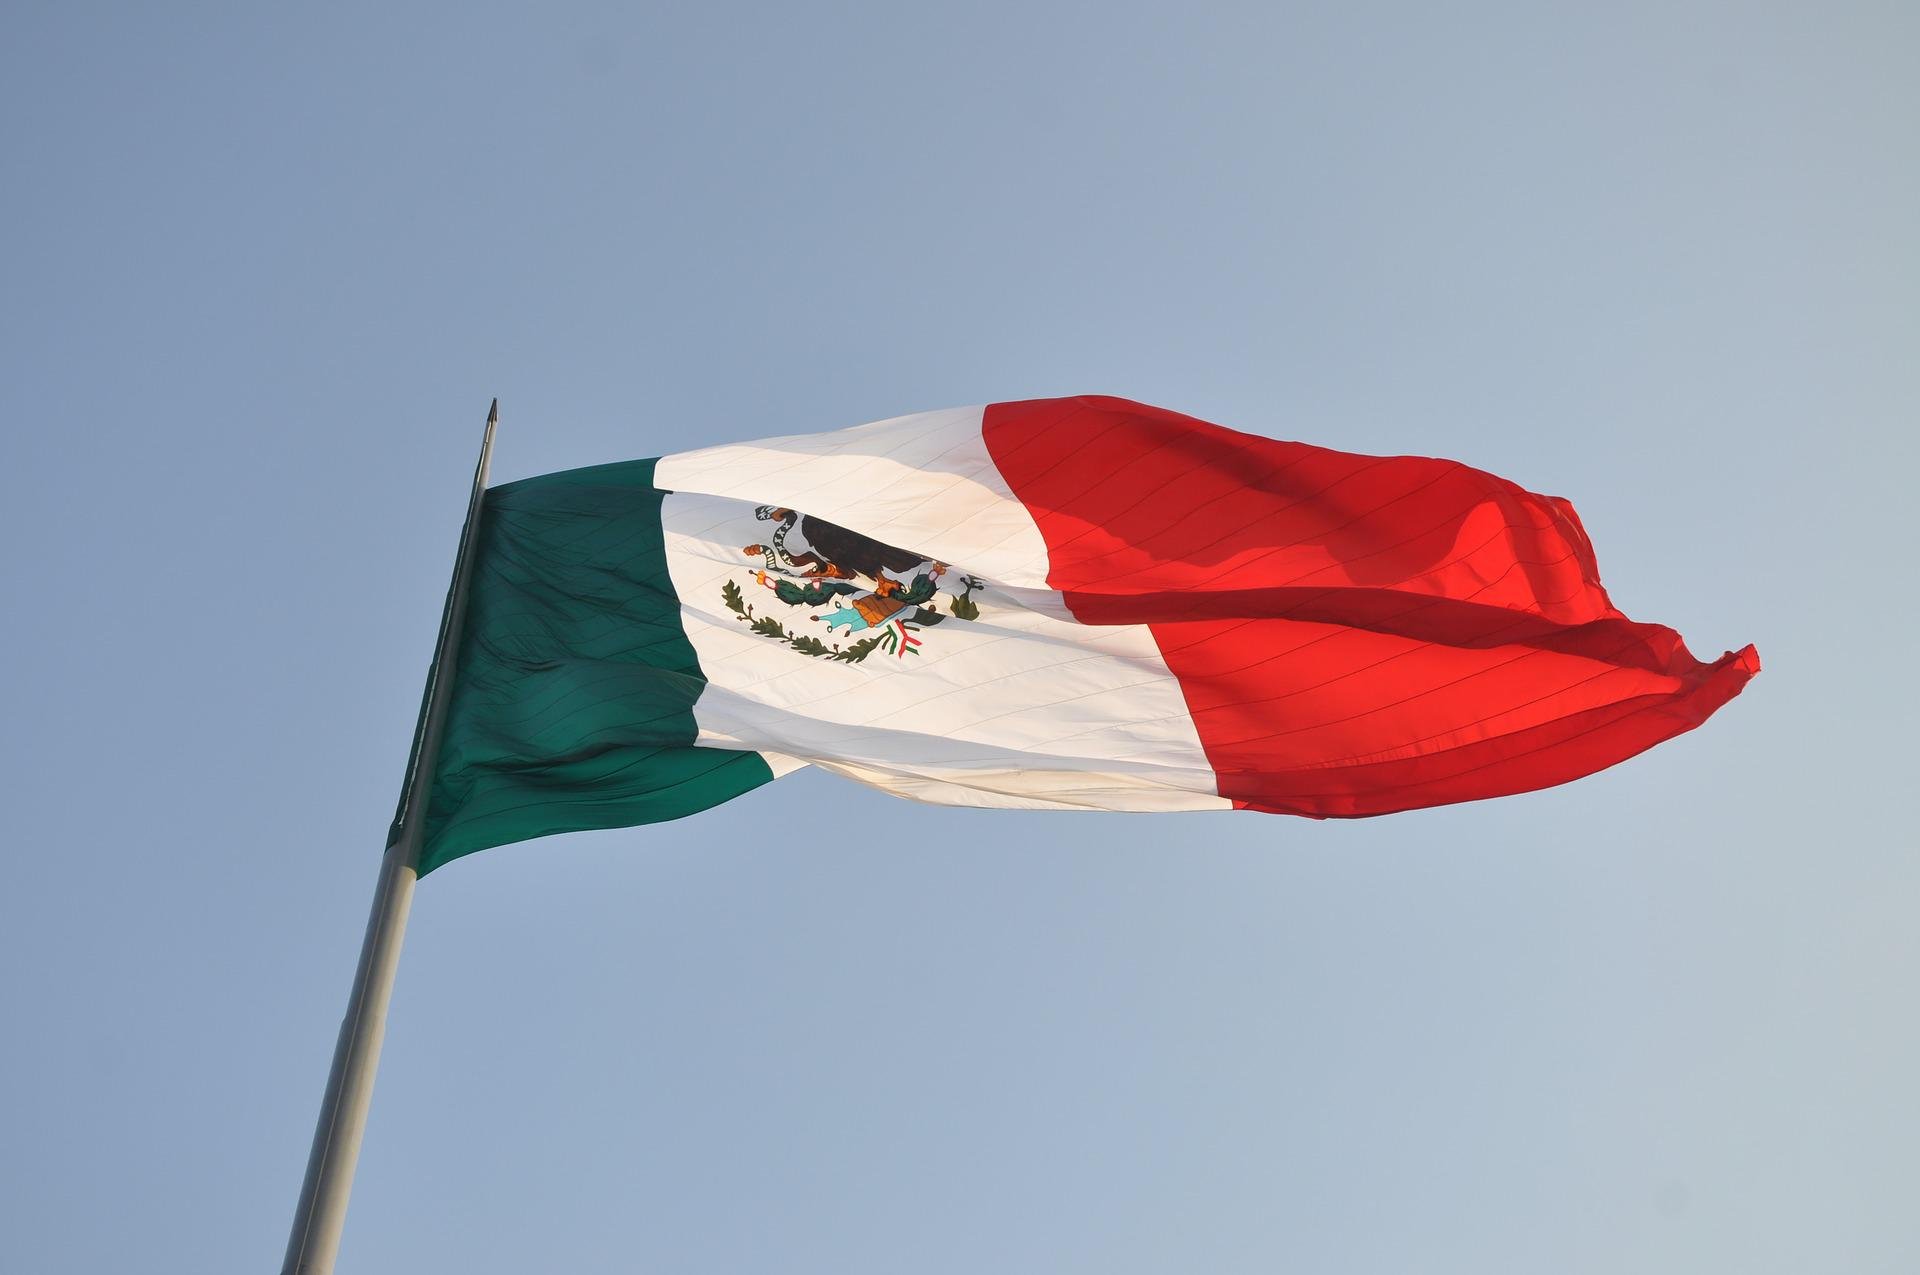 Día de la independencia de México